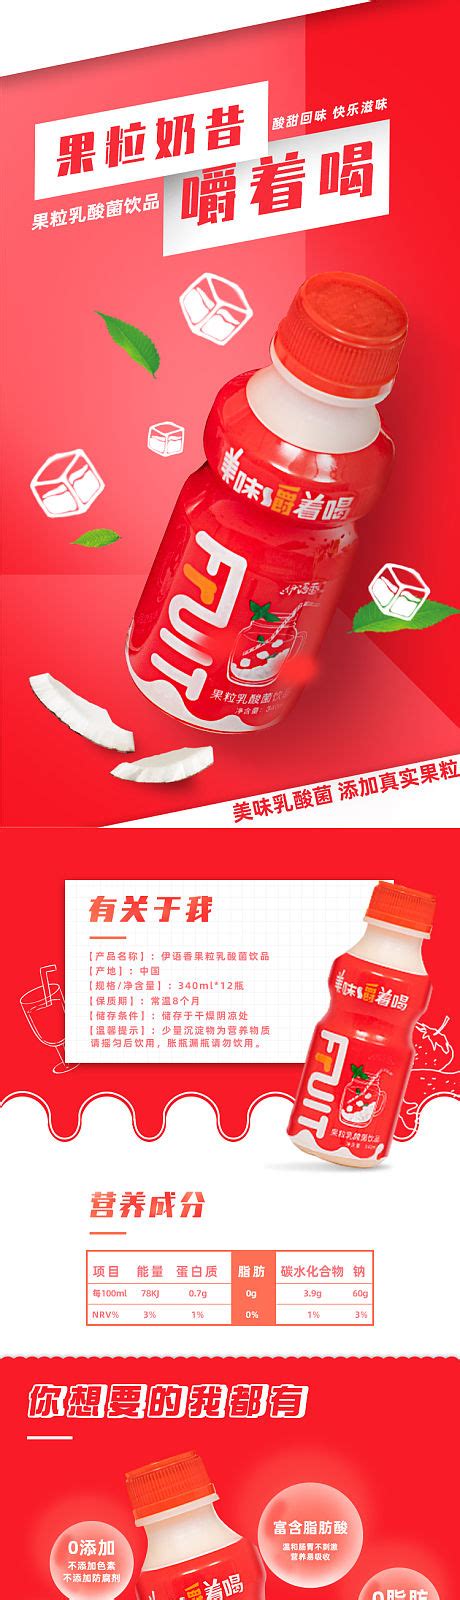 康师傅品牌味全乳酸菌9-12月推广方案【快消品】 - 知乎